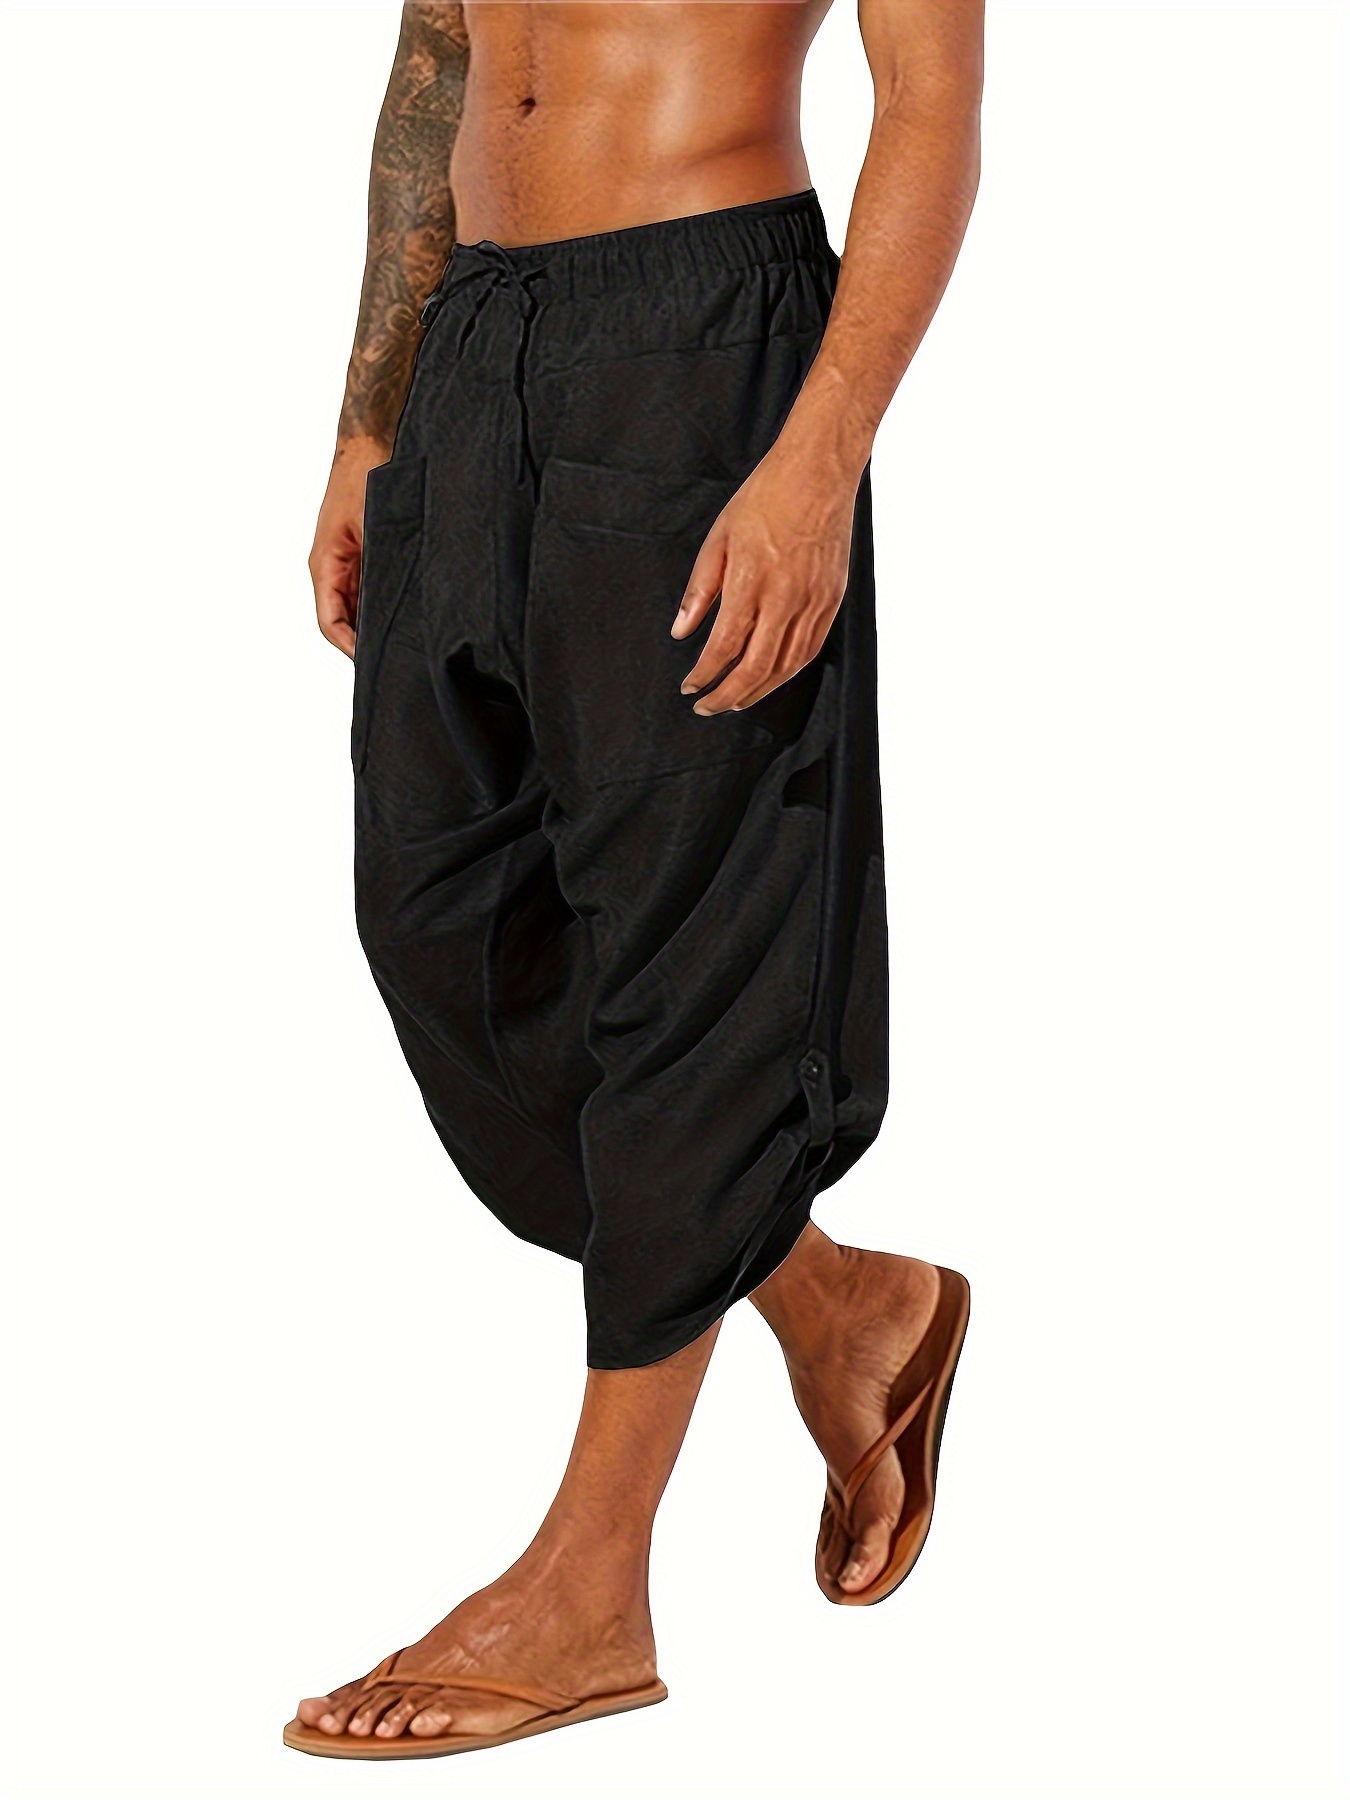 LULULEMON Dance To Yoga Pant black Size 4 cropped Jogger Harem Pants